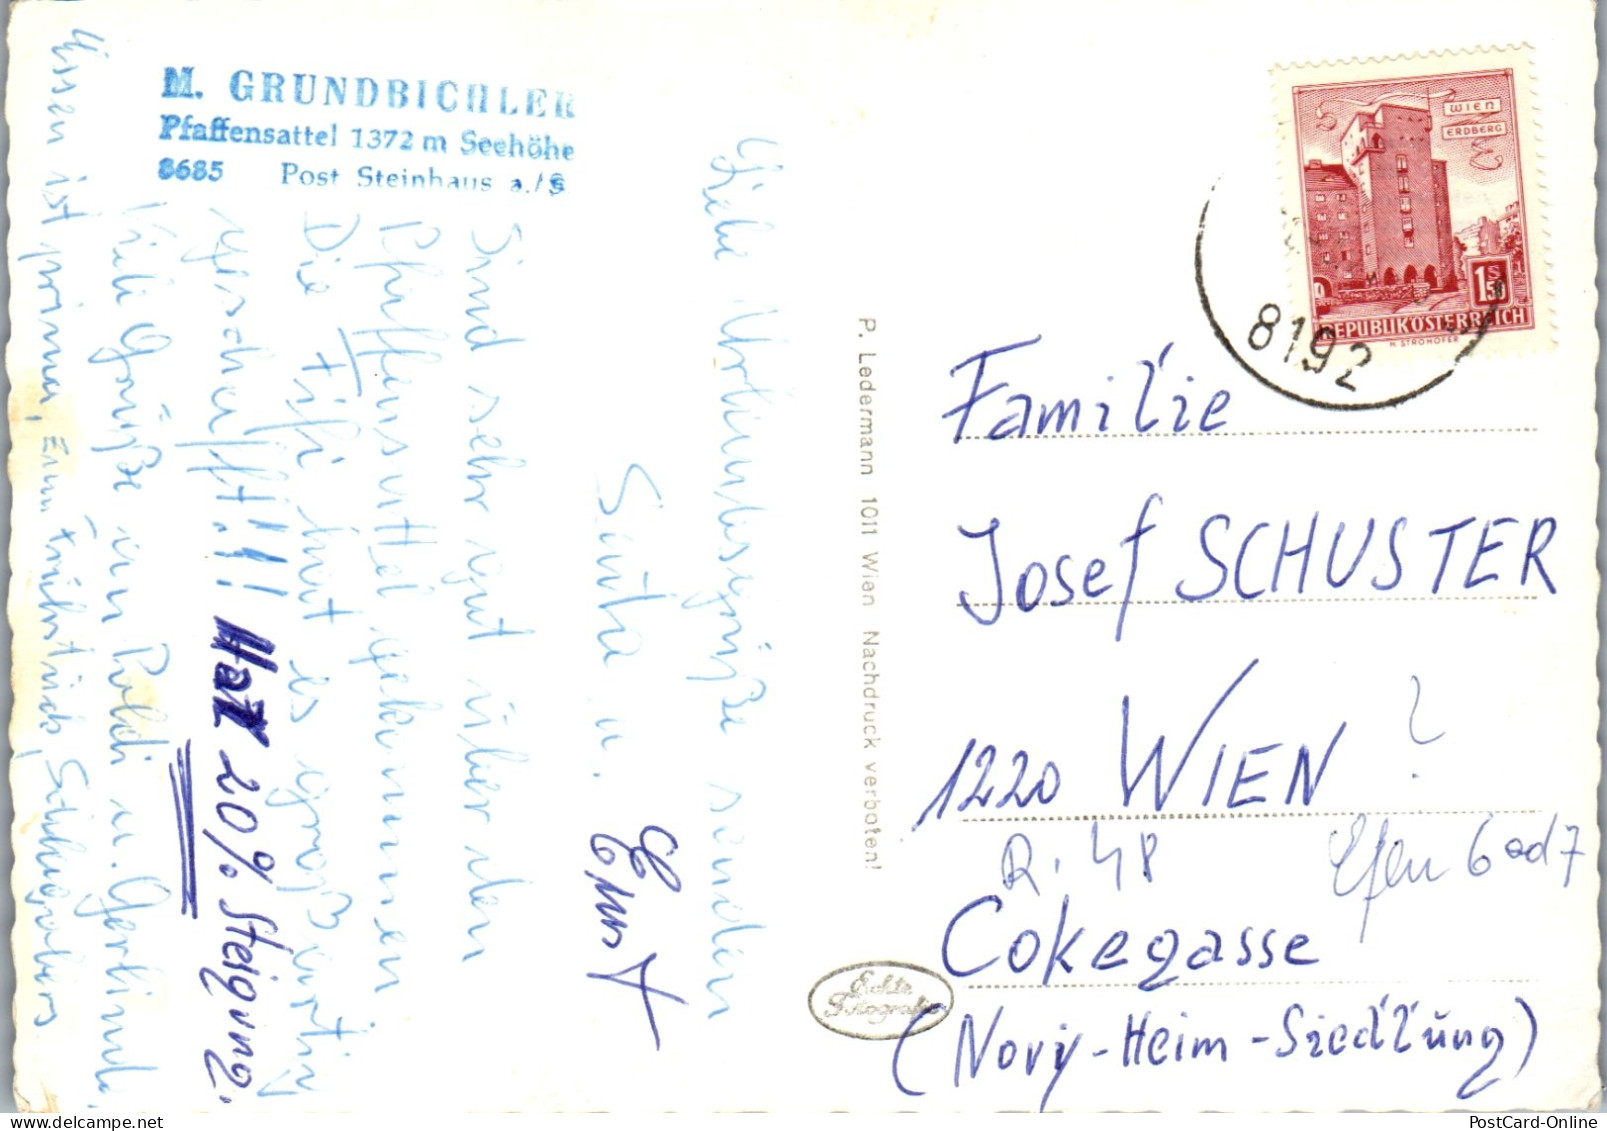 50302 - Steiermark - Steinhaus Am Semmering , Gasthof Pfaffensattel , M. Grundbichler - Gelaufen  - Steinhaus Am Semmering